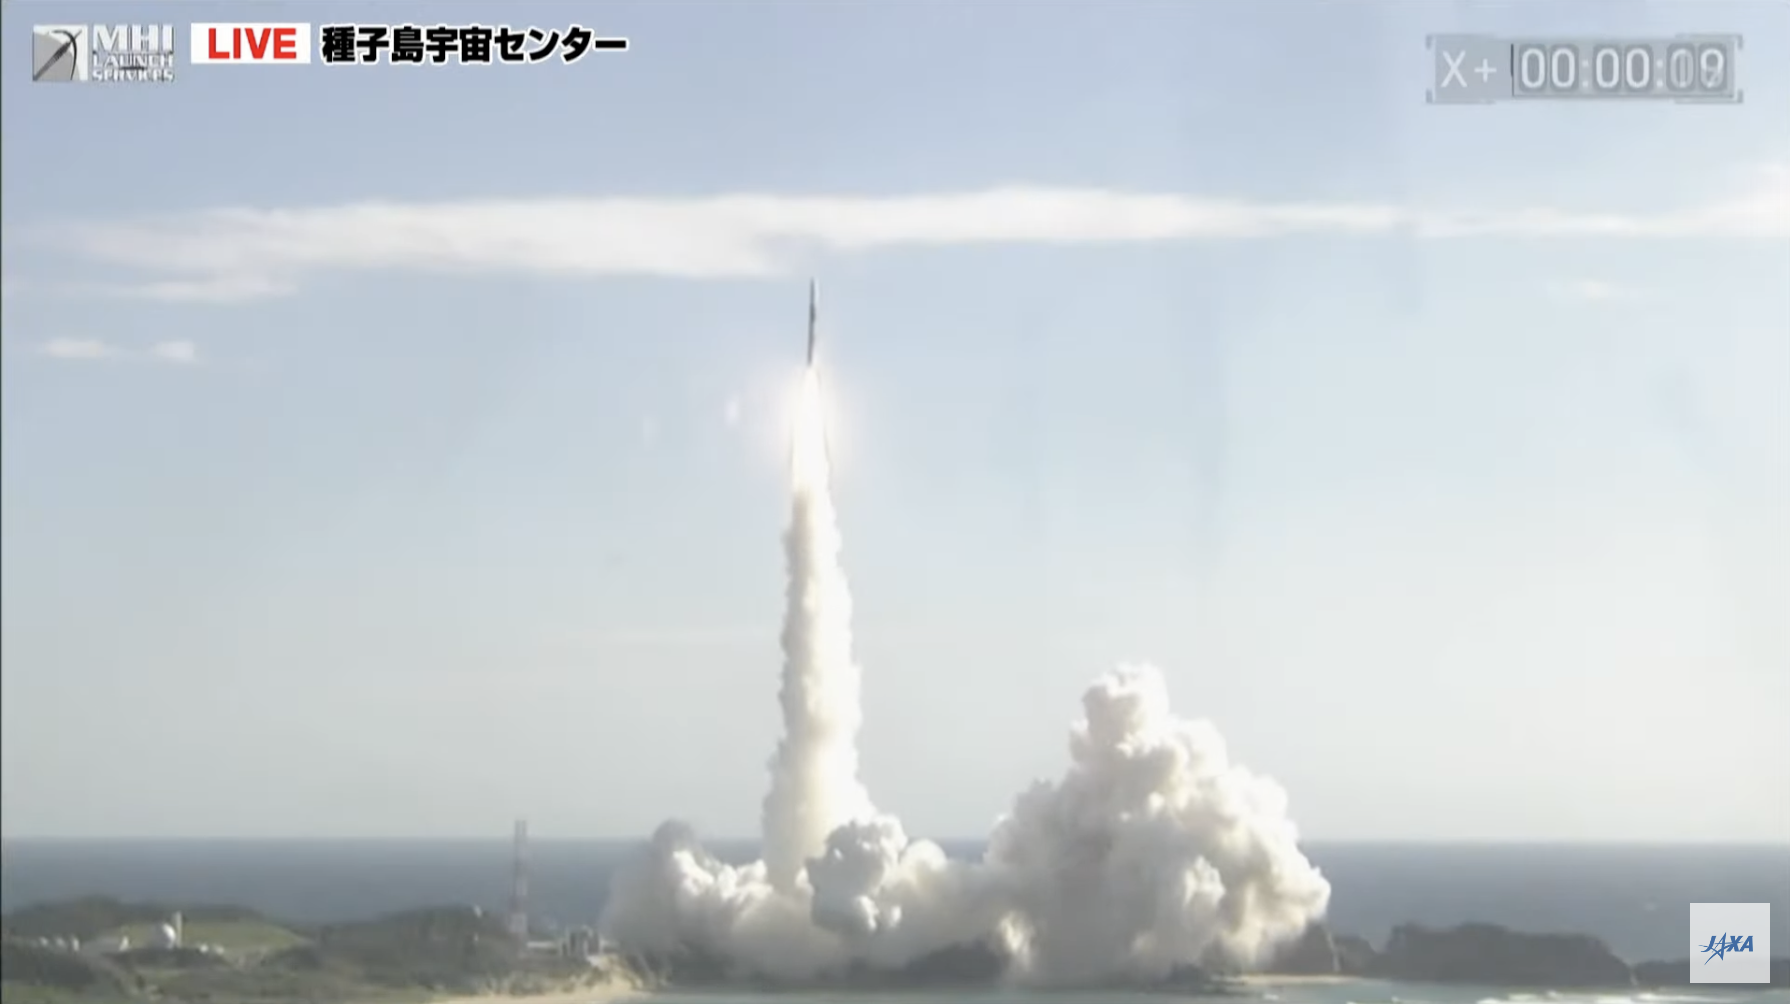 H2Aロケット47号機打上げ成功、XRIMとSLIMとも無事に軌道へ投入